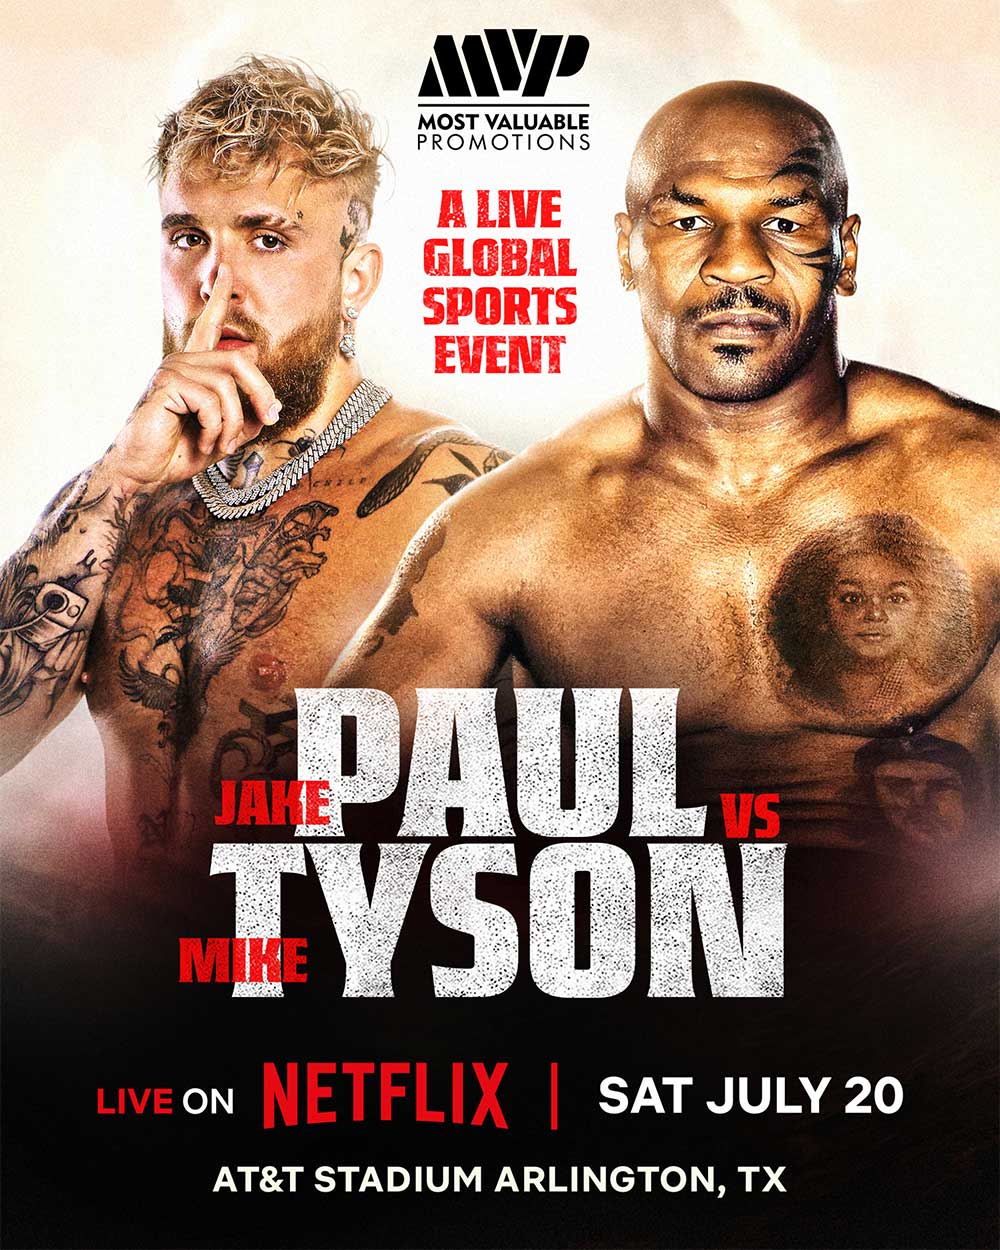 Mike Tyson anunciou que vai lutar contra Jake Paul no dia 20 de julho (e vai ser transmitido pela Netflix)
